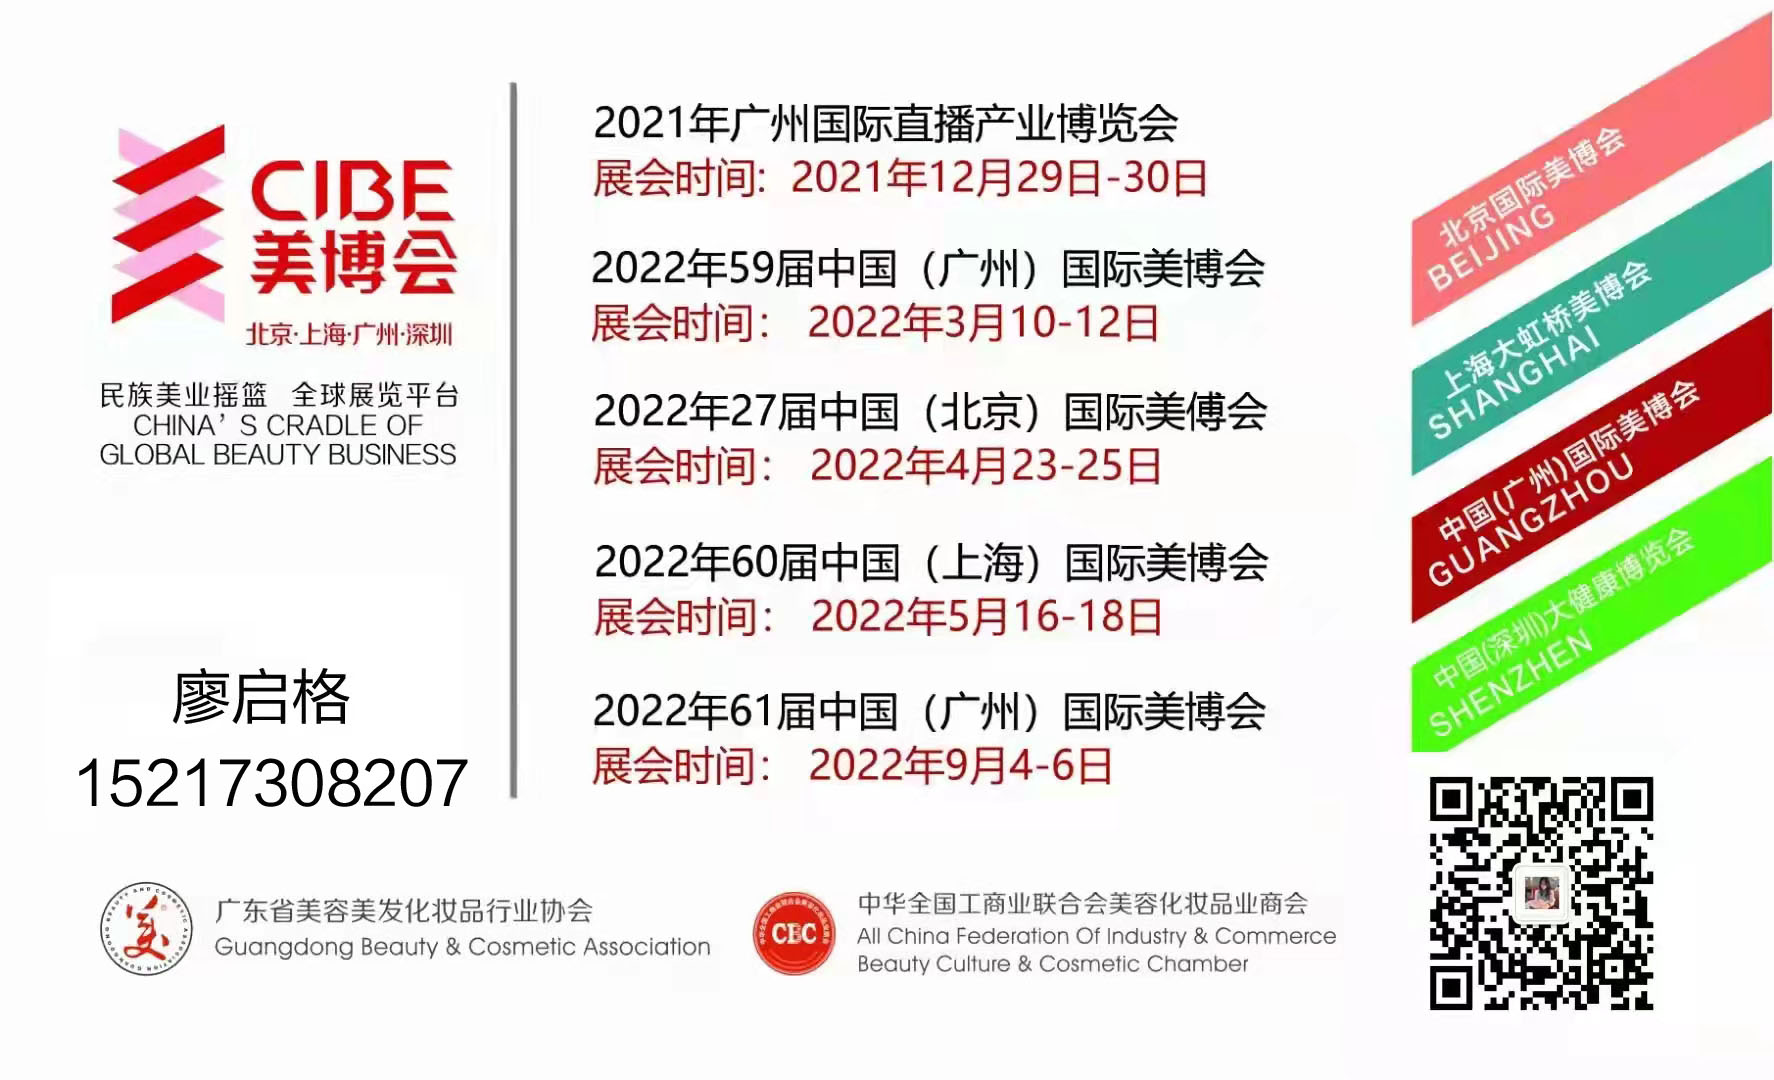 2022广州秋季美博会&7CIBE第61届中国国际美博会(www.828i.com)